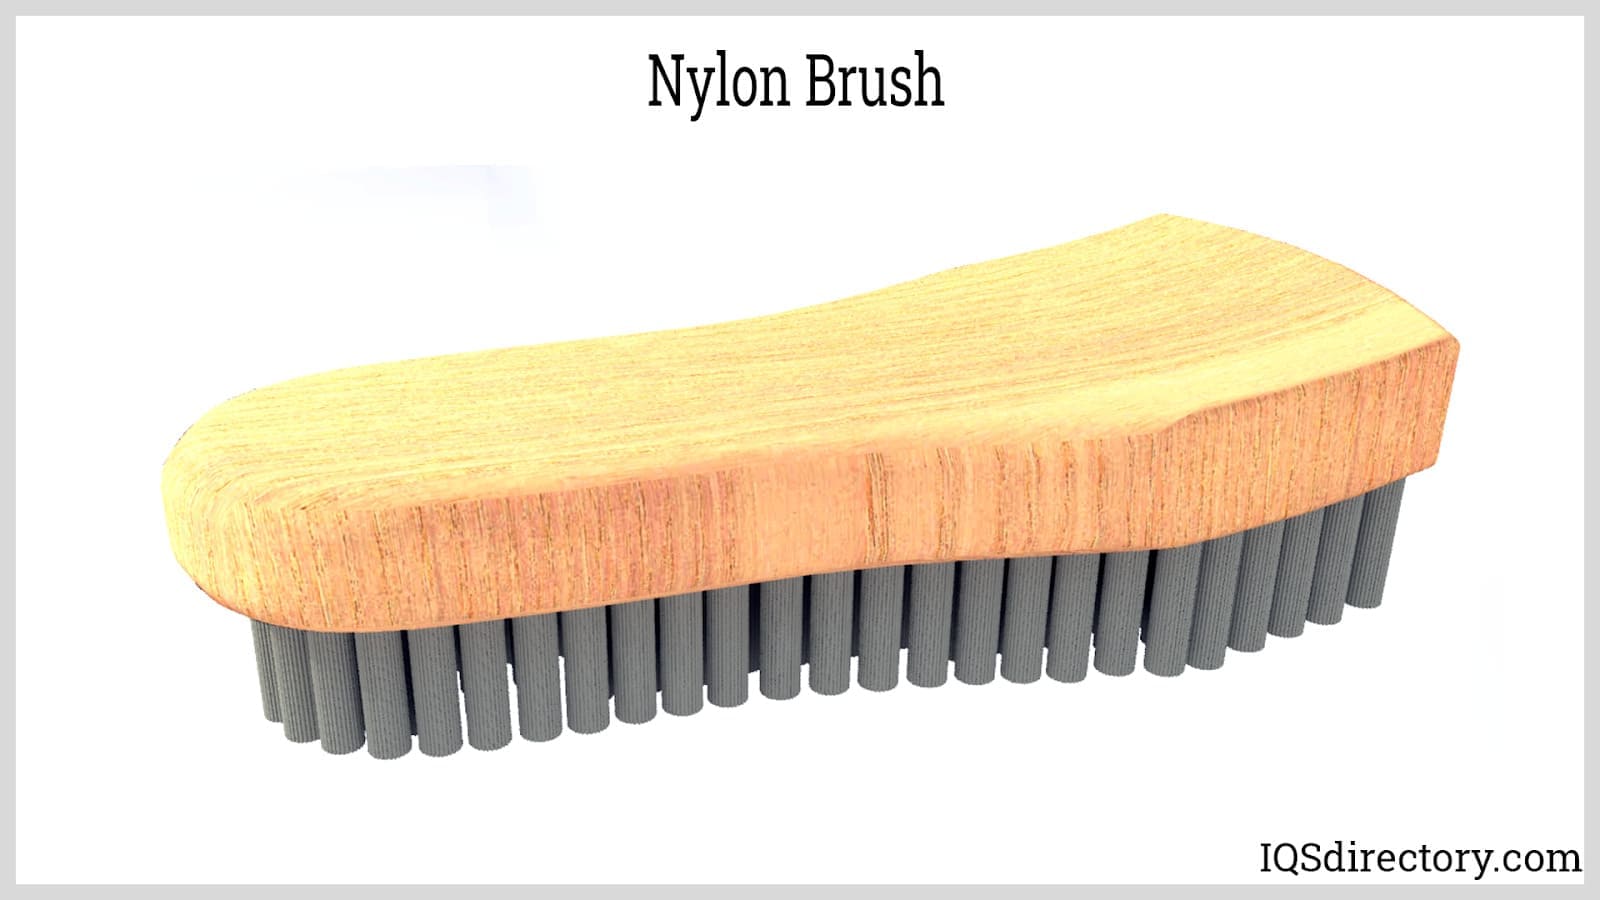 https://www.iqsdirectory.com/articles/brush/types-of-brushes/nylon-brush.jpg